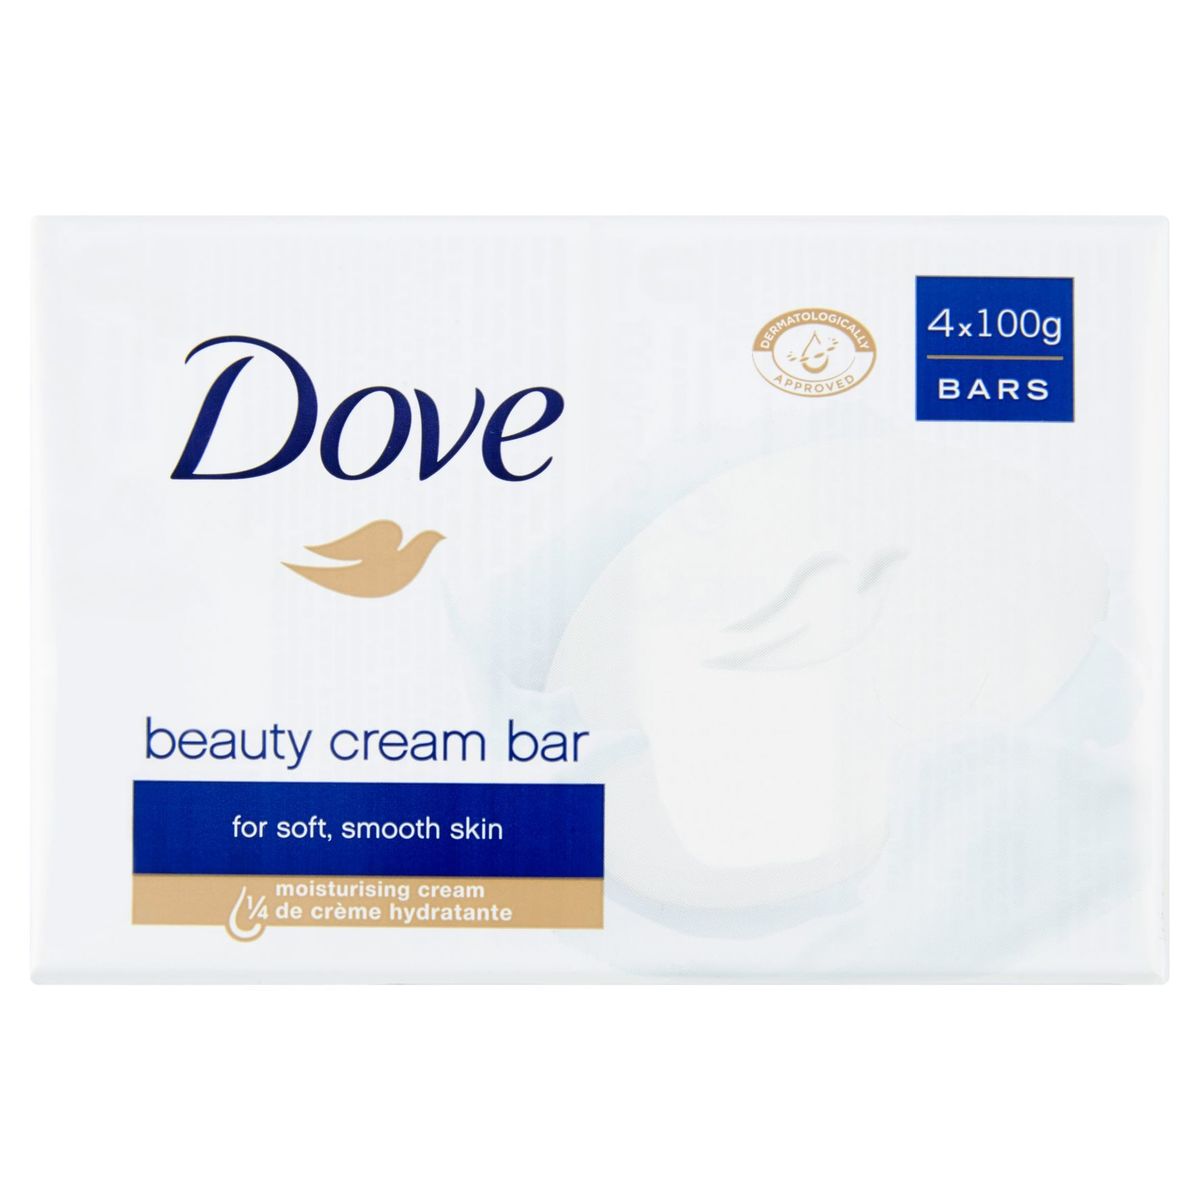 Dove  Zeep  Original zeep met 1/4 hydraterende crème 4x 100 g